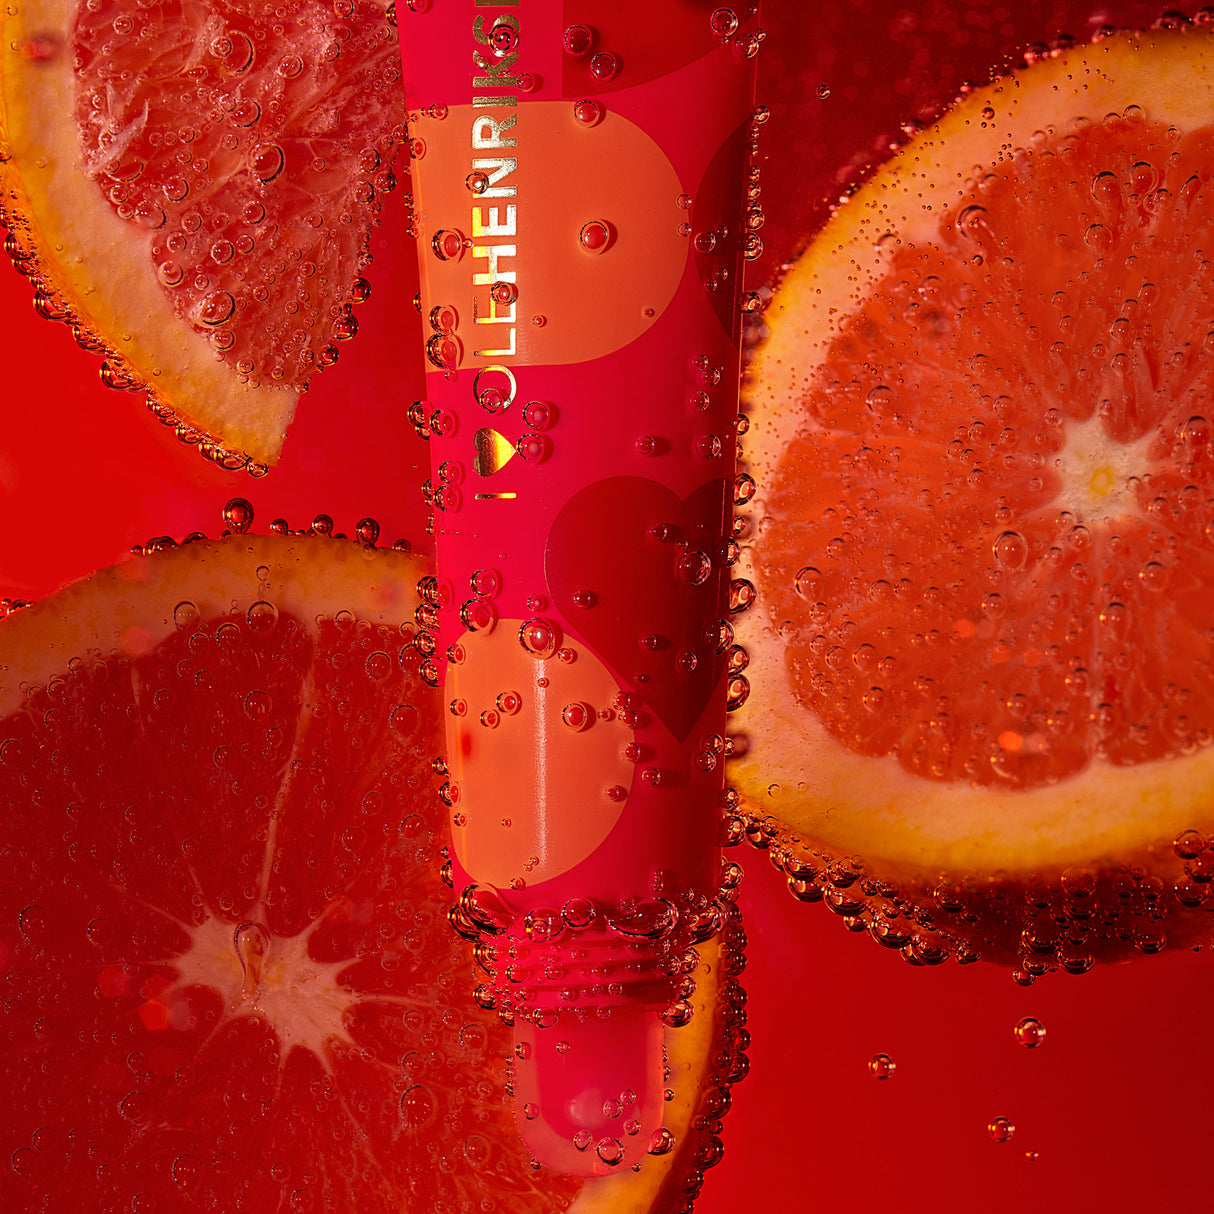 Pout Preserve Lip Treatment - Blood Orange Spritz